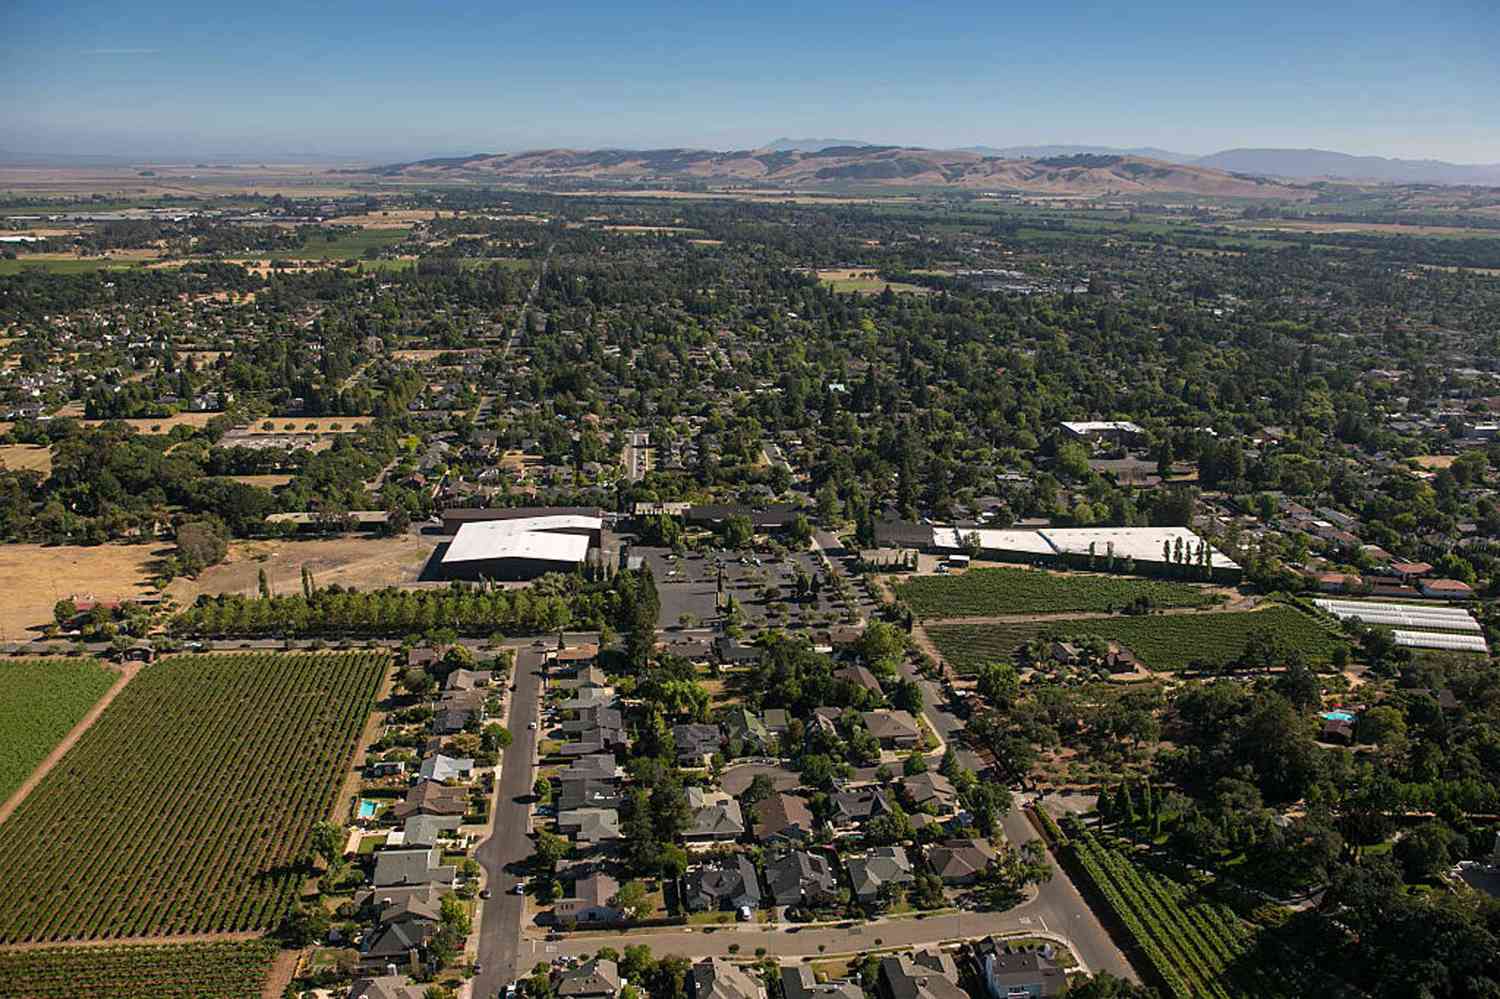 La ville historique de Sonoma, située dans la vallée de Sonoma, est vue du ciel le 22 juin 2015